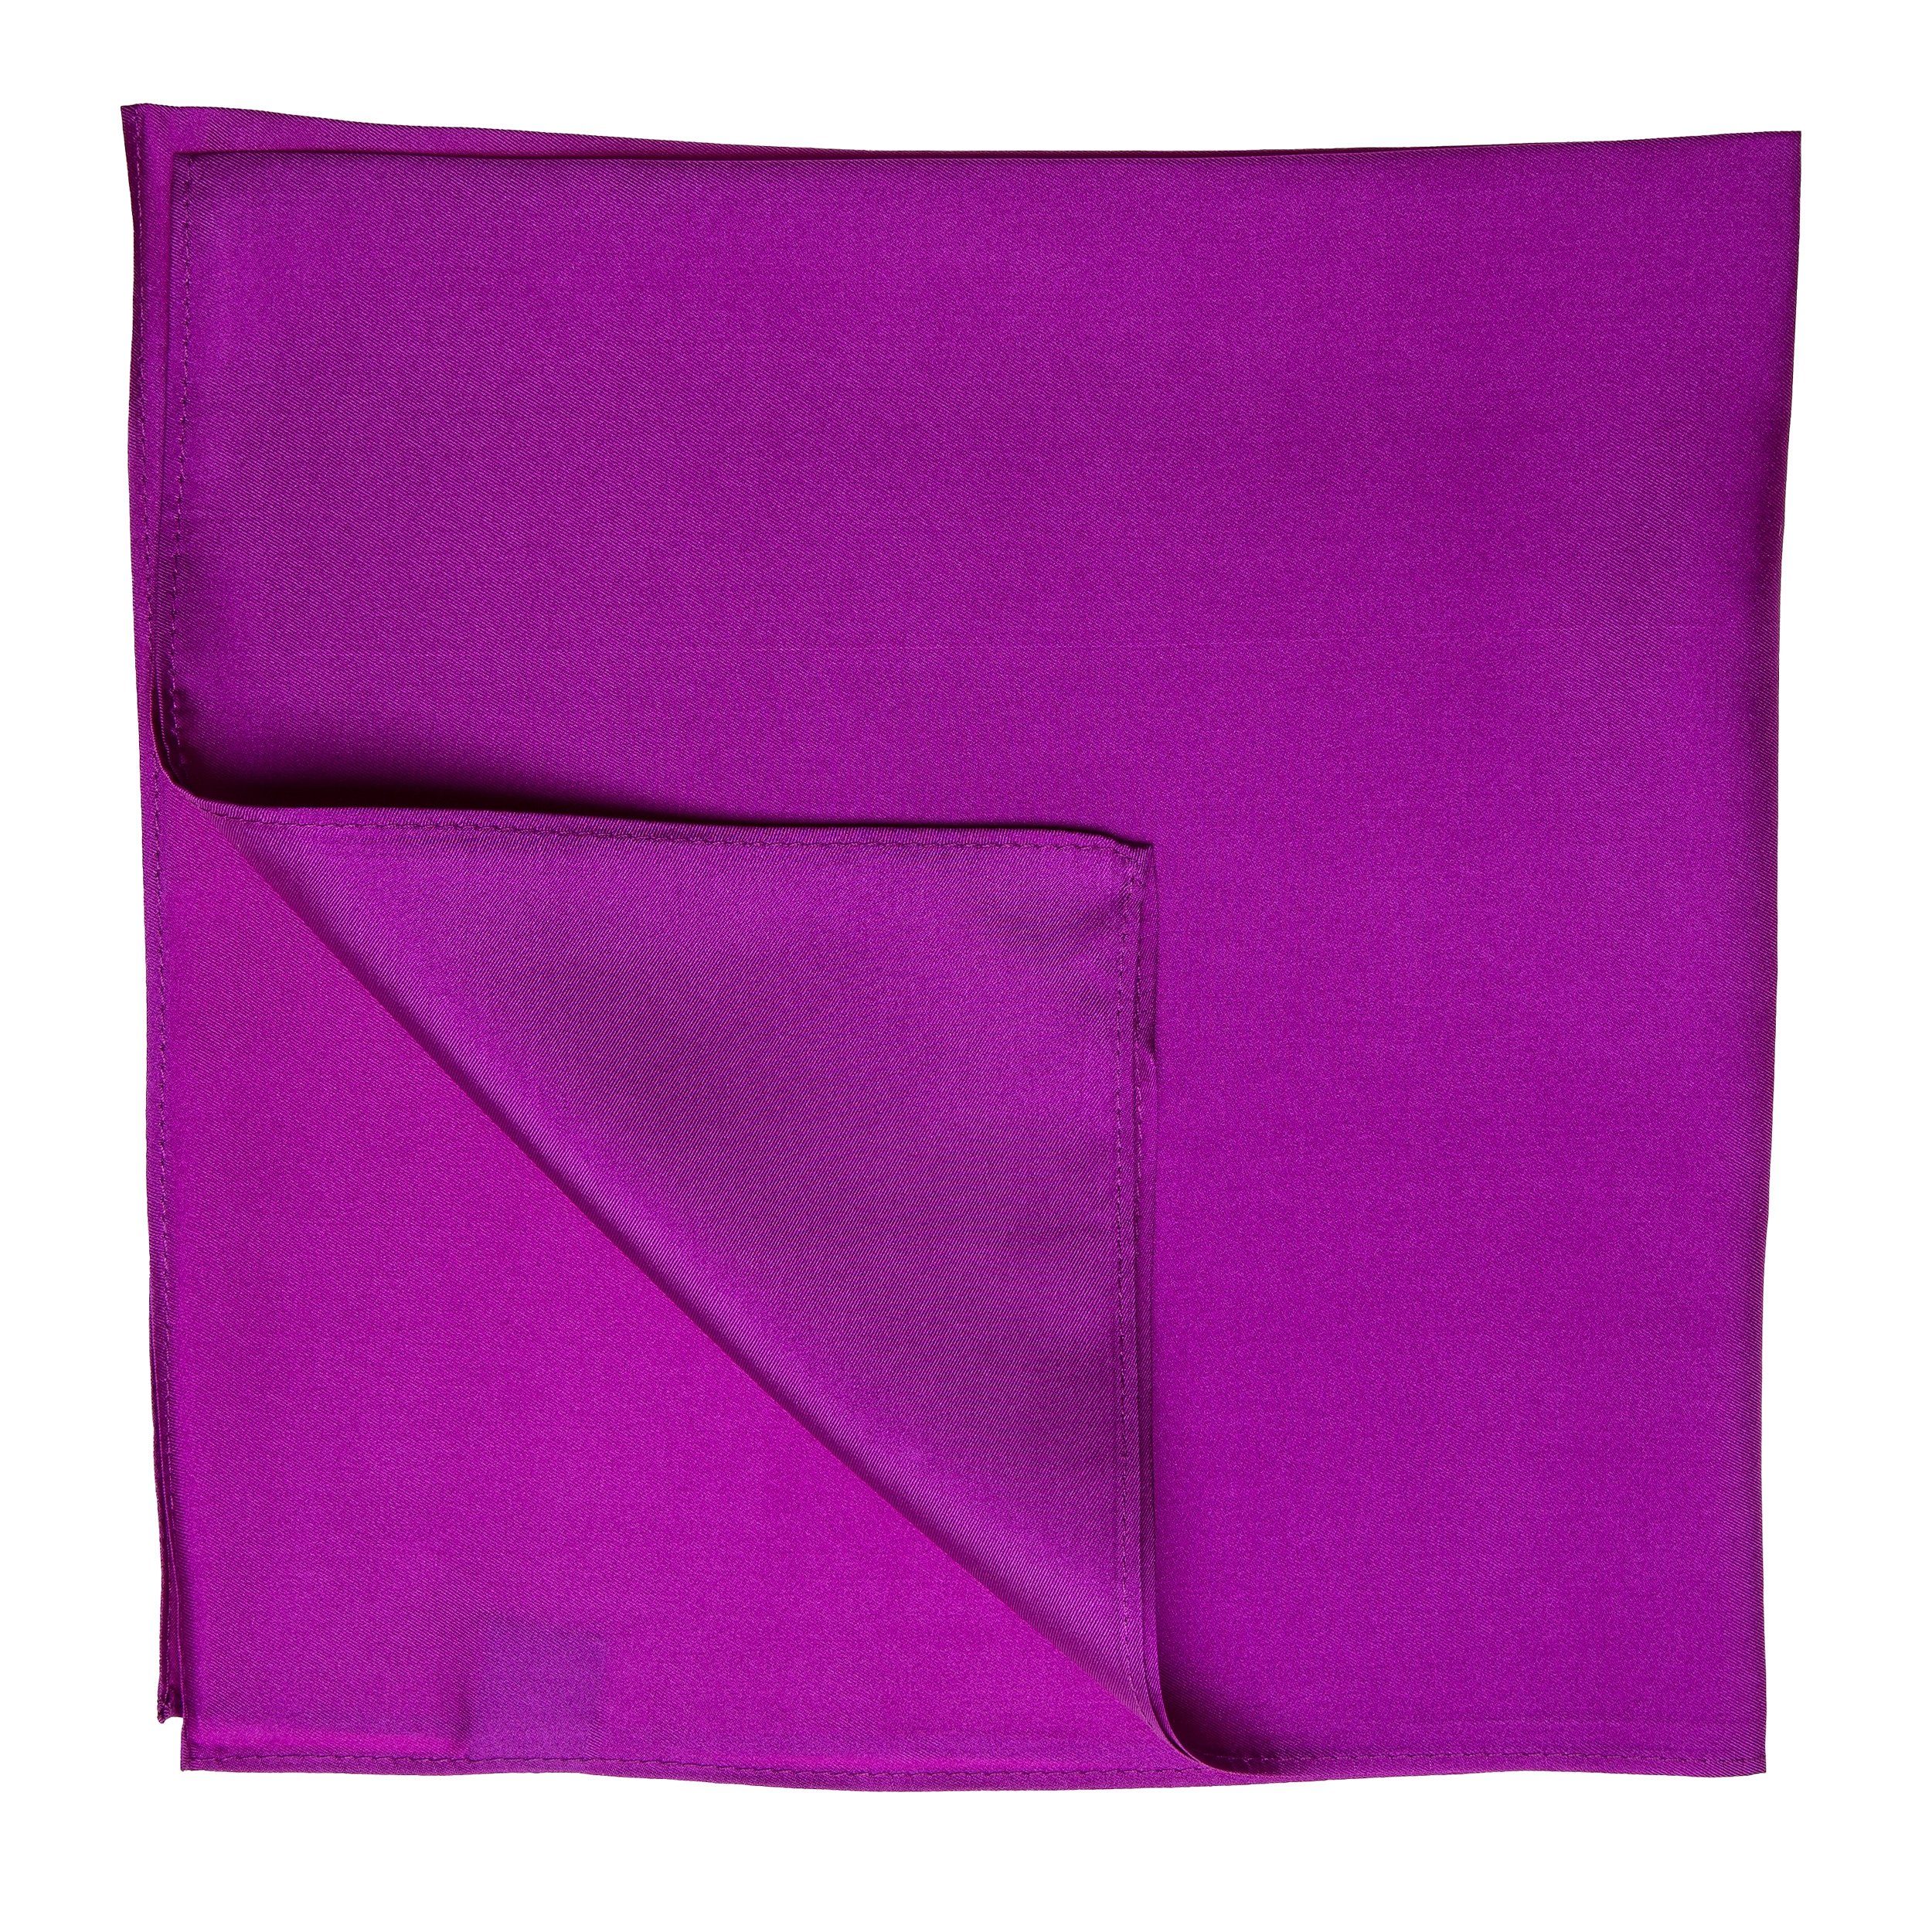 TINITEX Halstuch purpur-violett Seidentuch Twill Nickituch